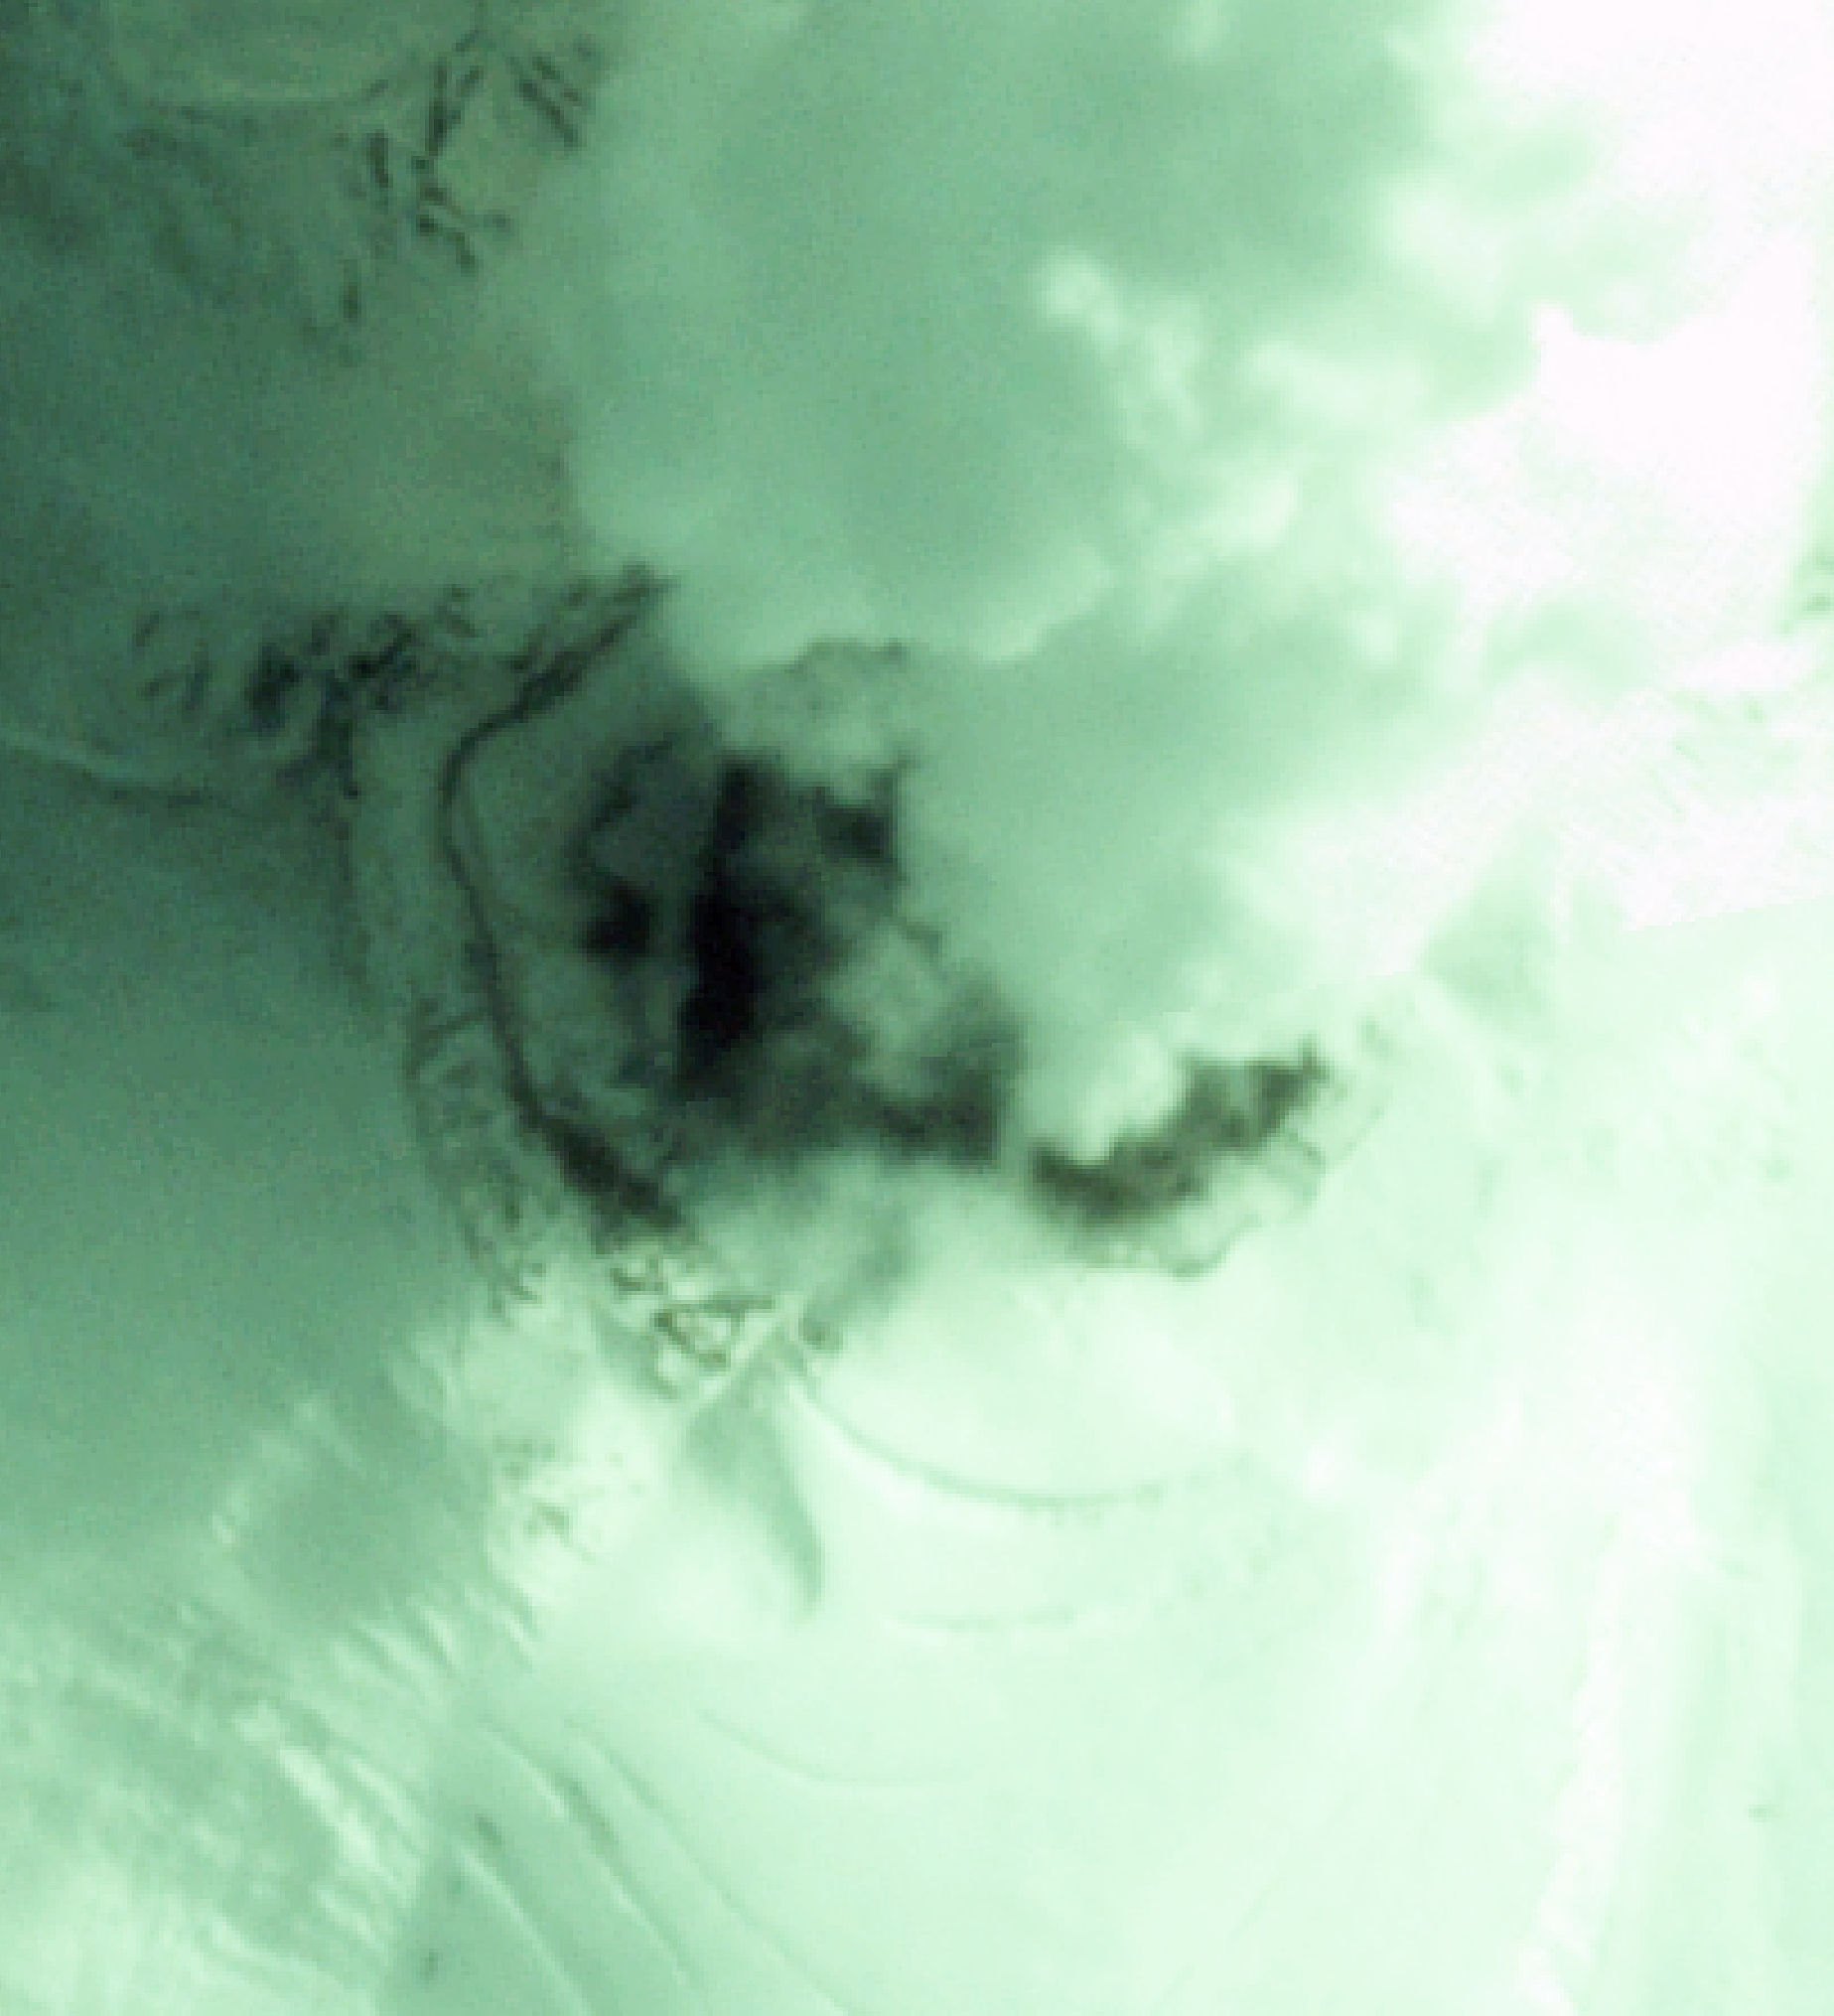 Imagen satelital volcán Nevado del Ruiz